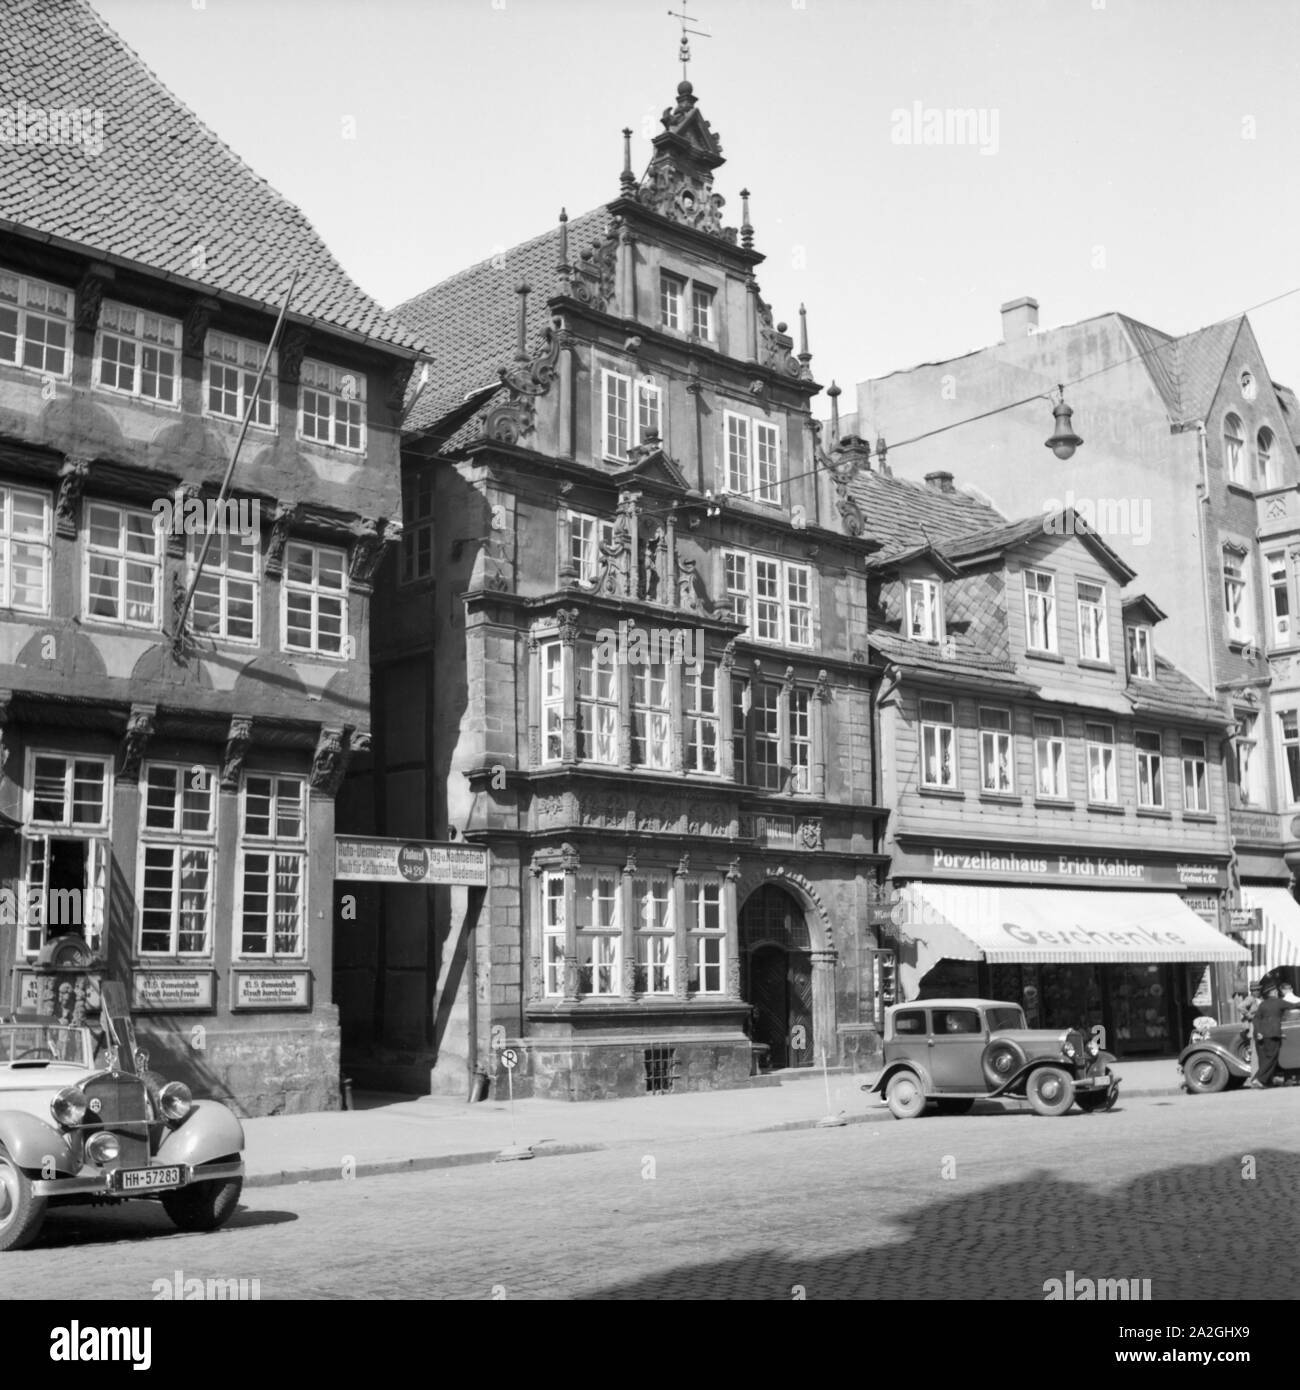 Das leisthaus in der Osterstraße in der Innenstadt von Hameln an der Weser, Deutschland 1930er Jahre. Leisthaus Patrizier Haus in der Osterstrasse Straße in der Stadt Hameln an der Weser, Deutschland 1930. Stockfoto